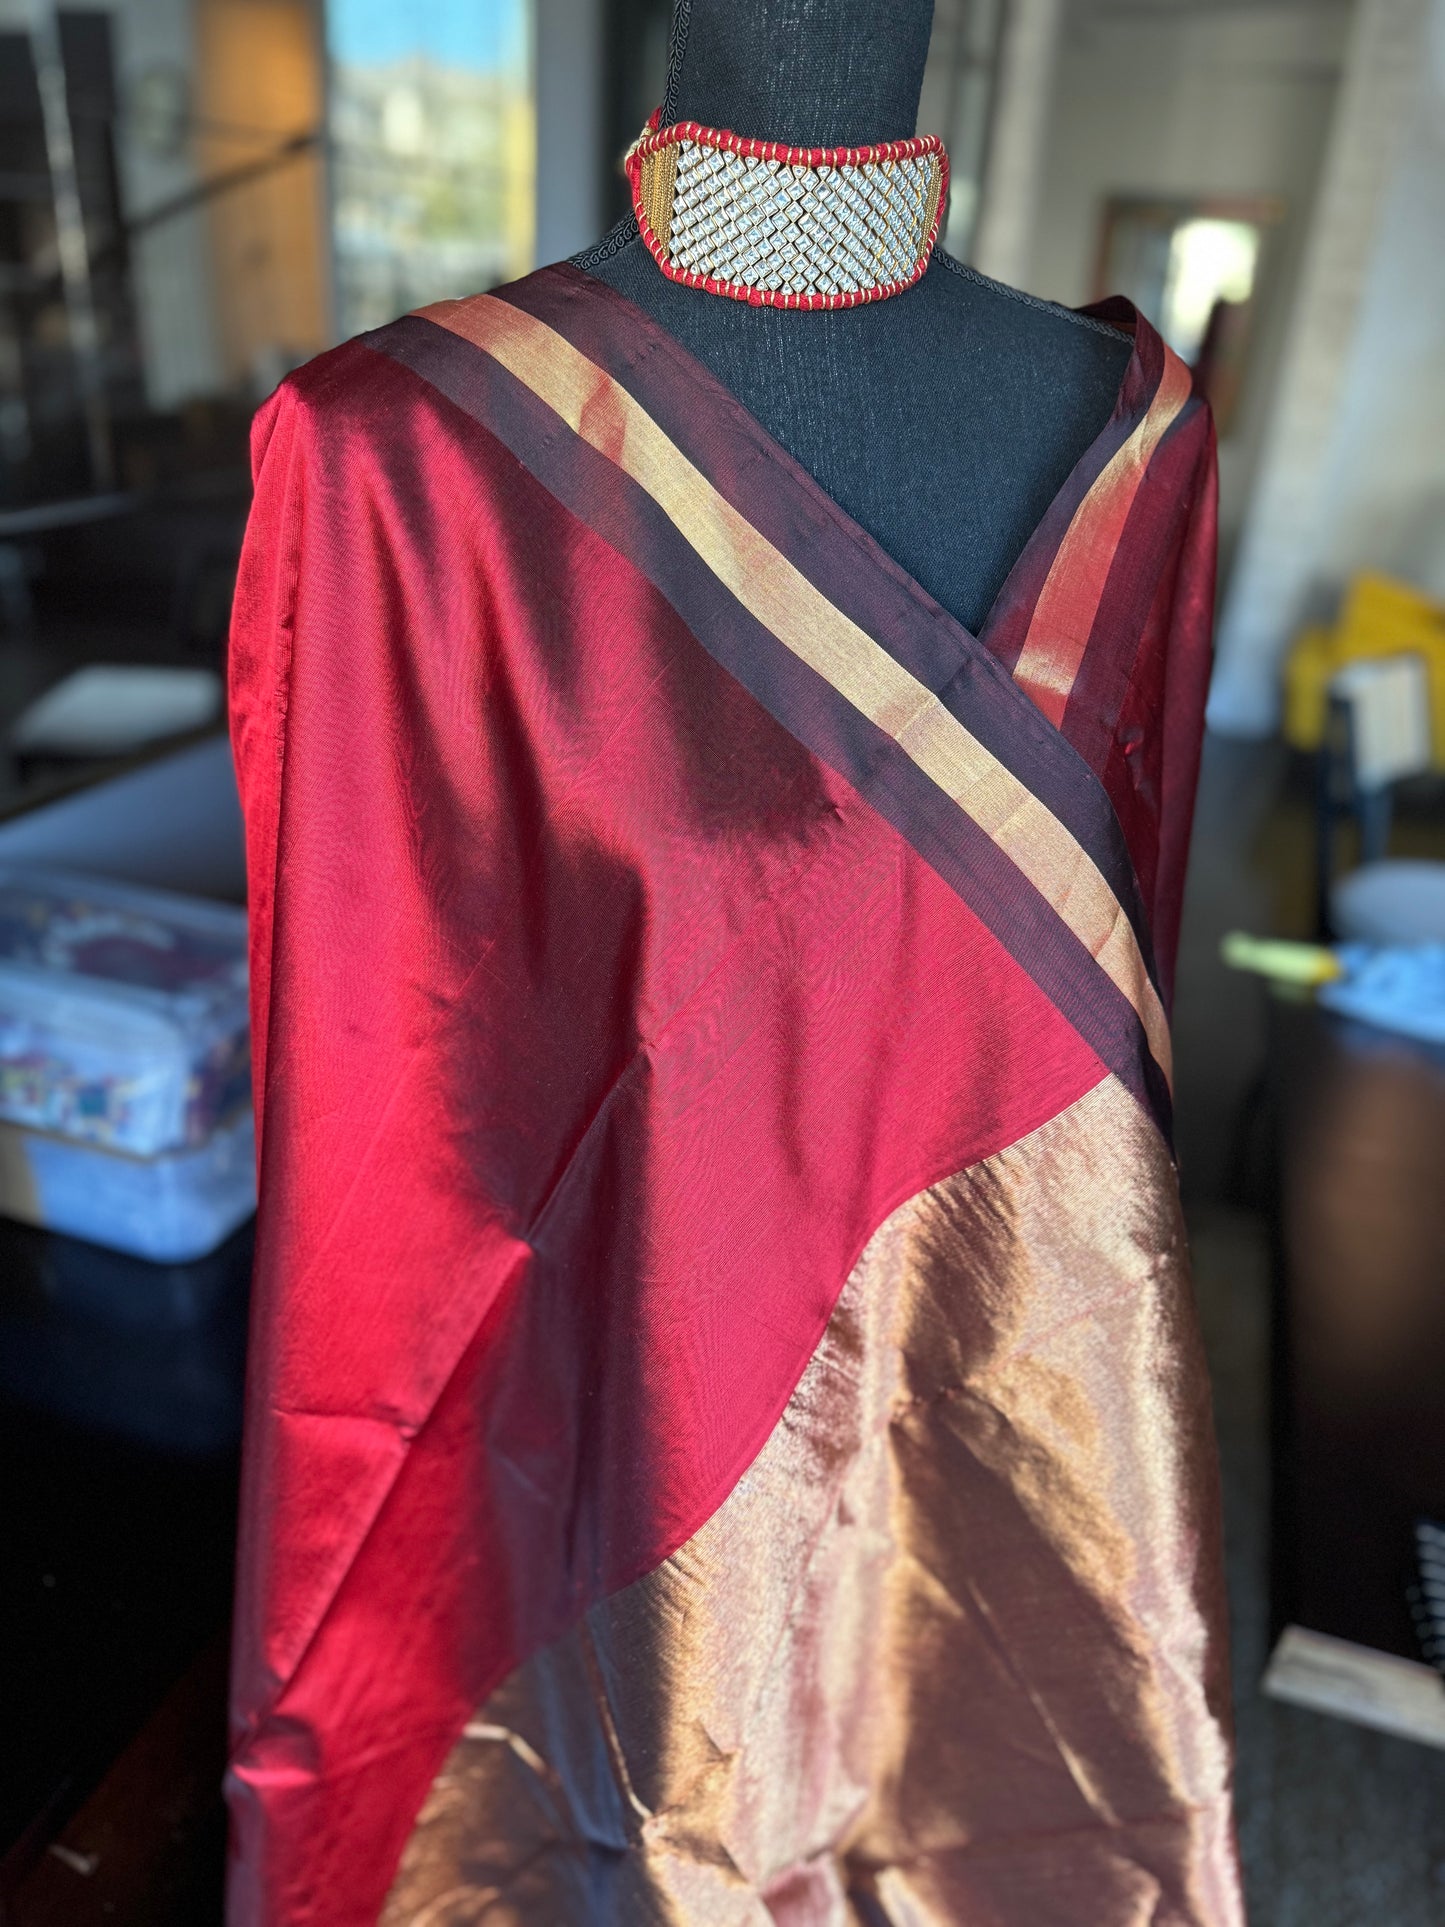 Pure Chanderi Pattu Mashru Silk - Red Black Gold Zari Striped woven